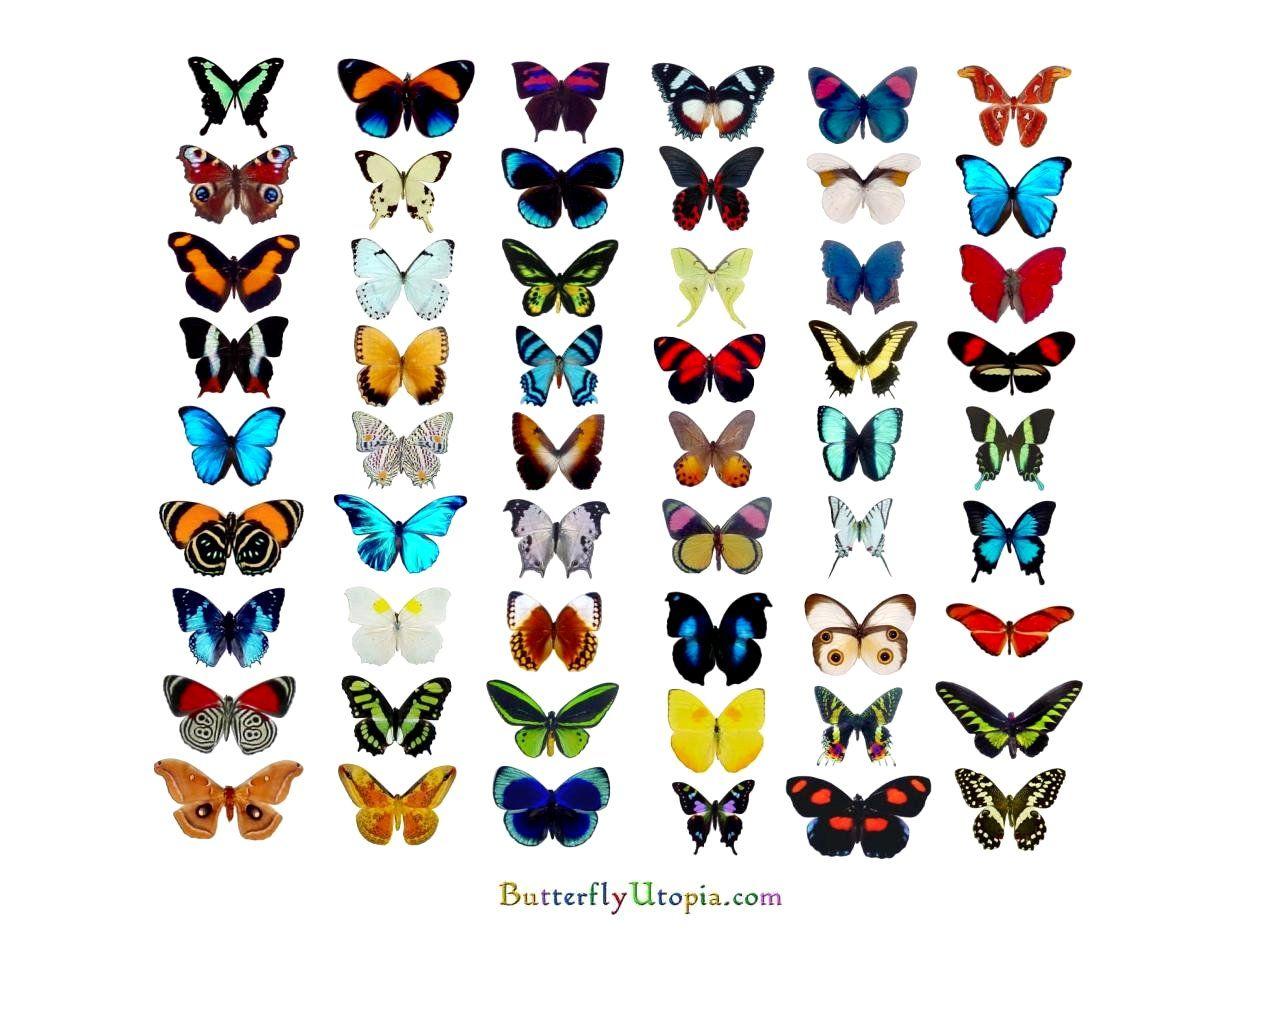 Free Butterfly Wallpaper, Wallpaper, Background, Desktop